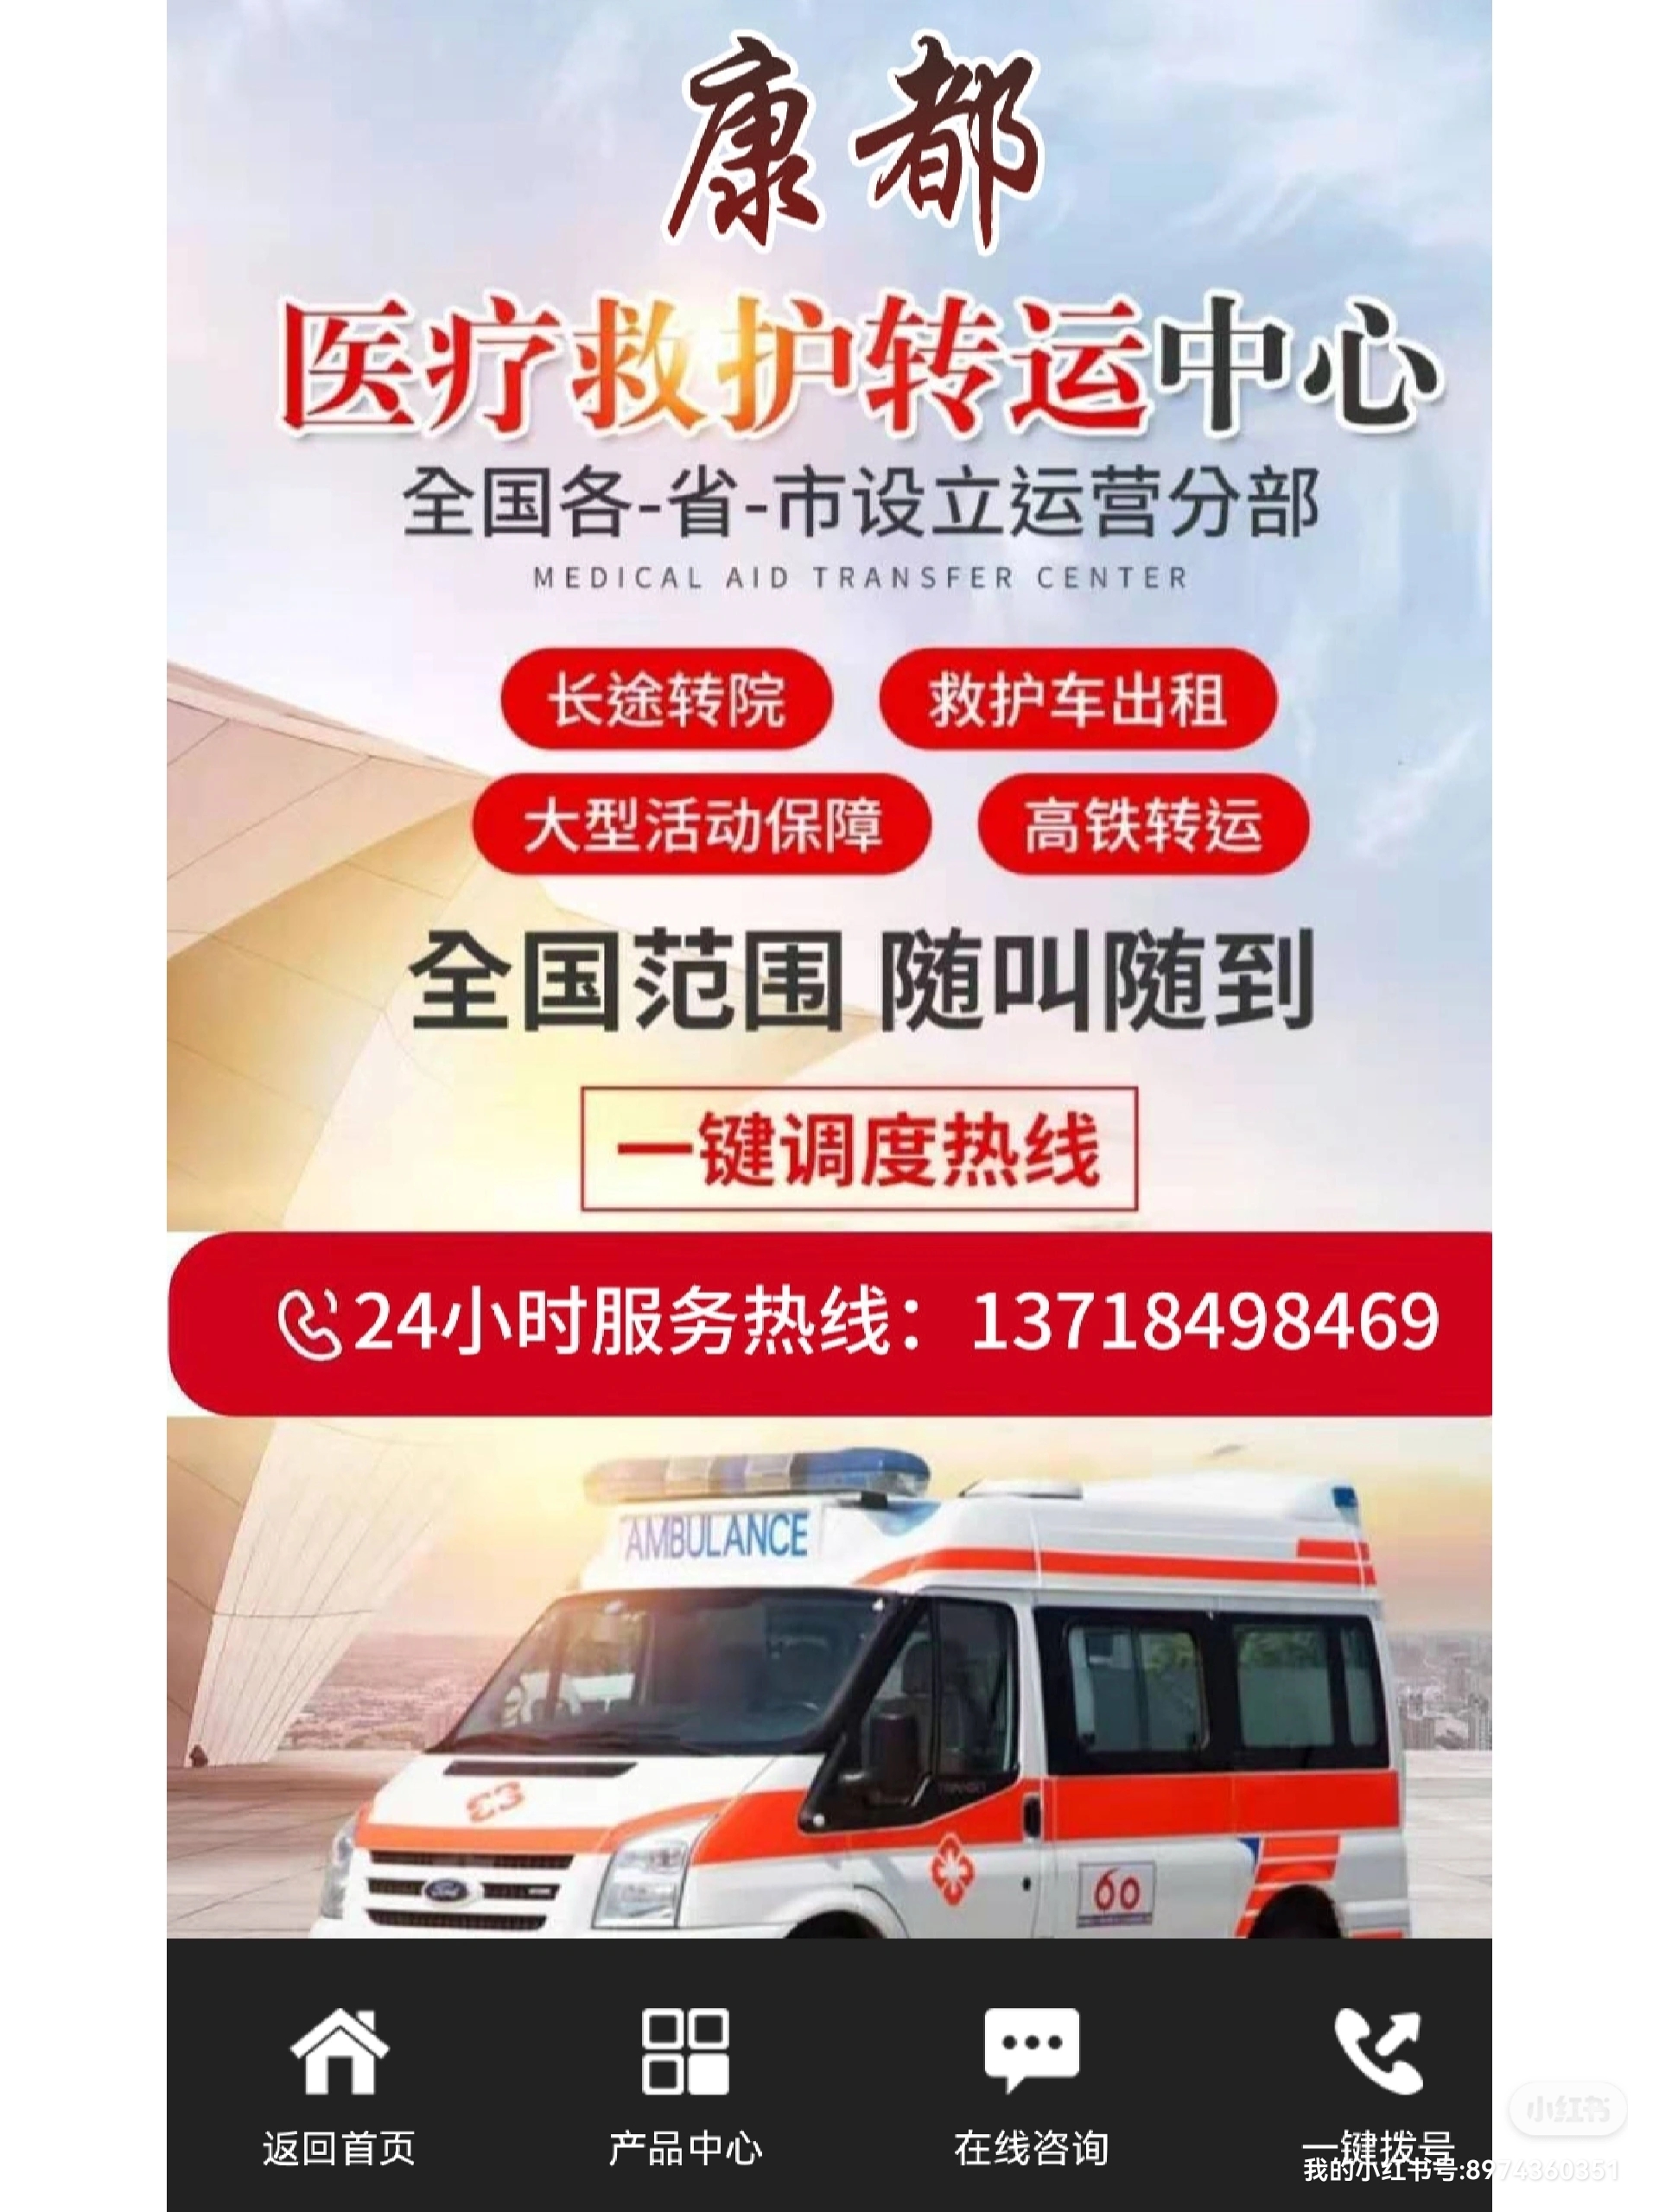 北京救护服务中心提供24小时医疗护送服务